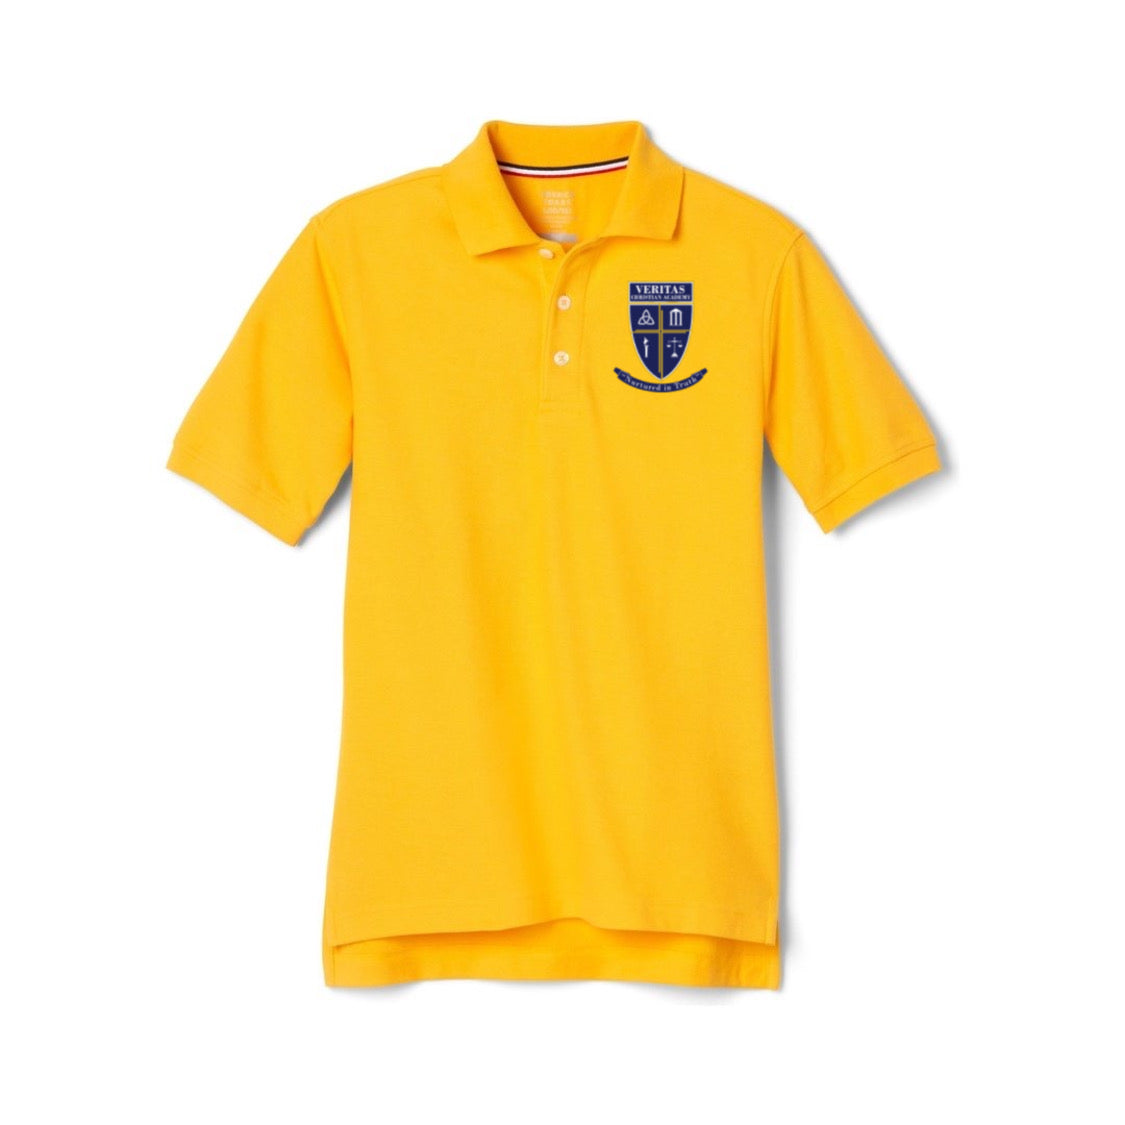 Veritas - Boy's Short Sleeve Pique Polo - With Logo